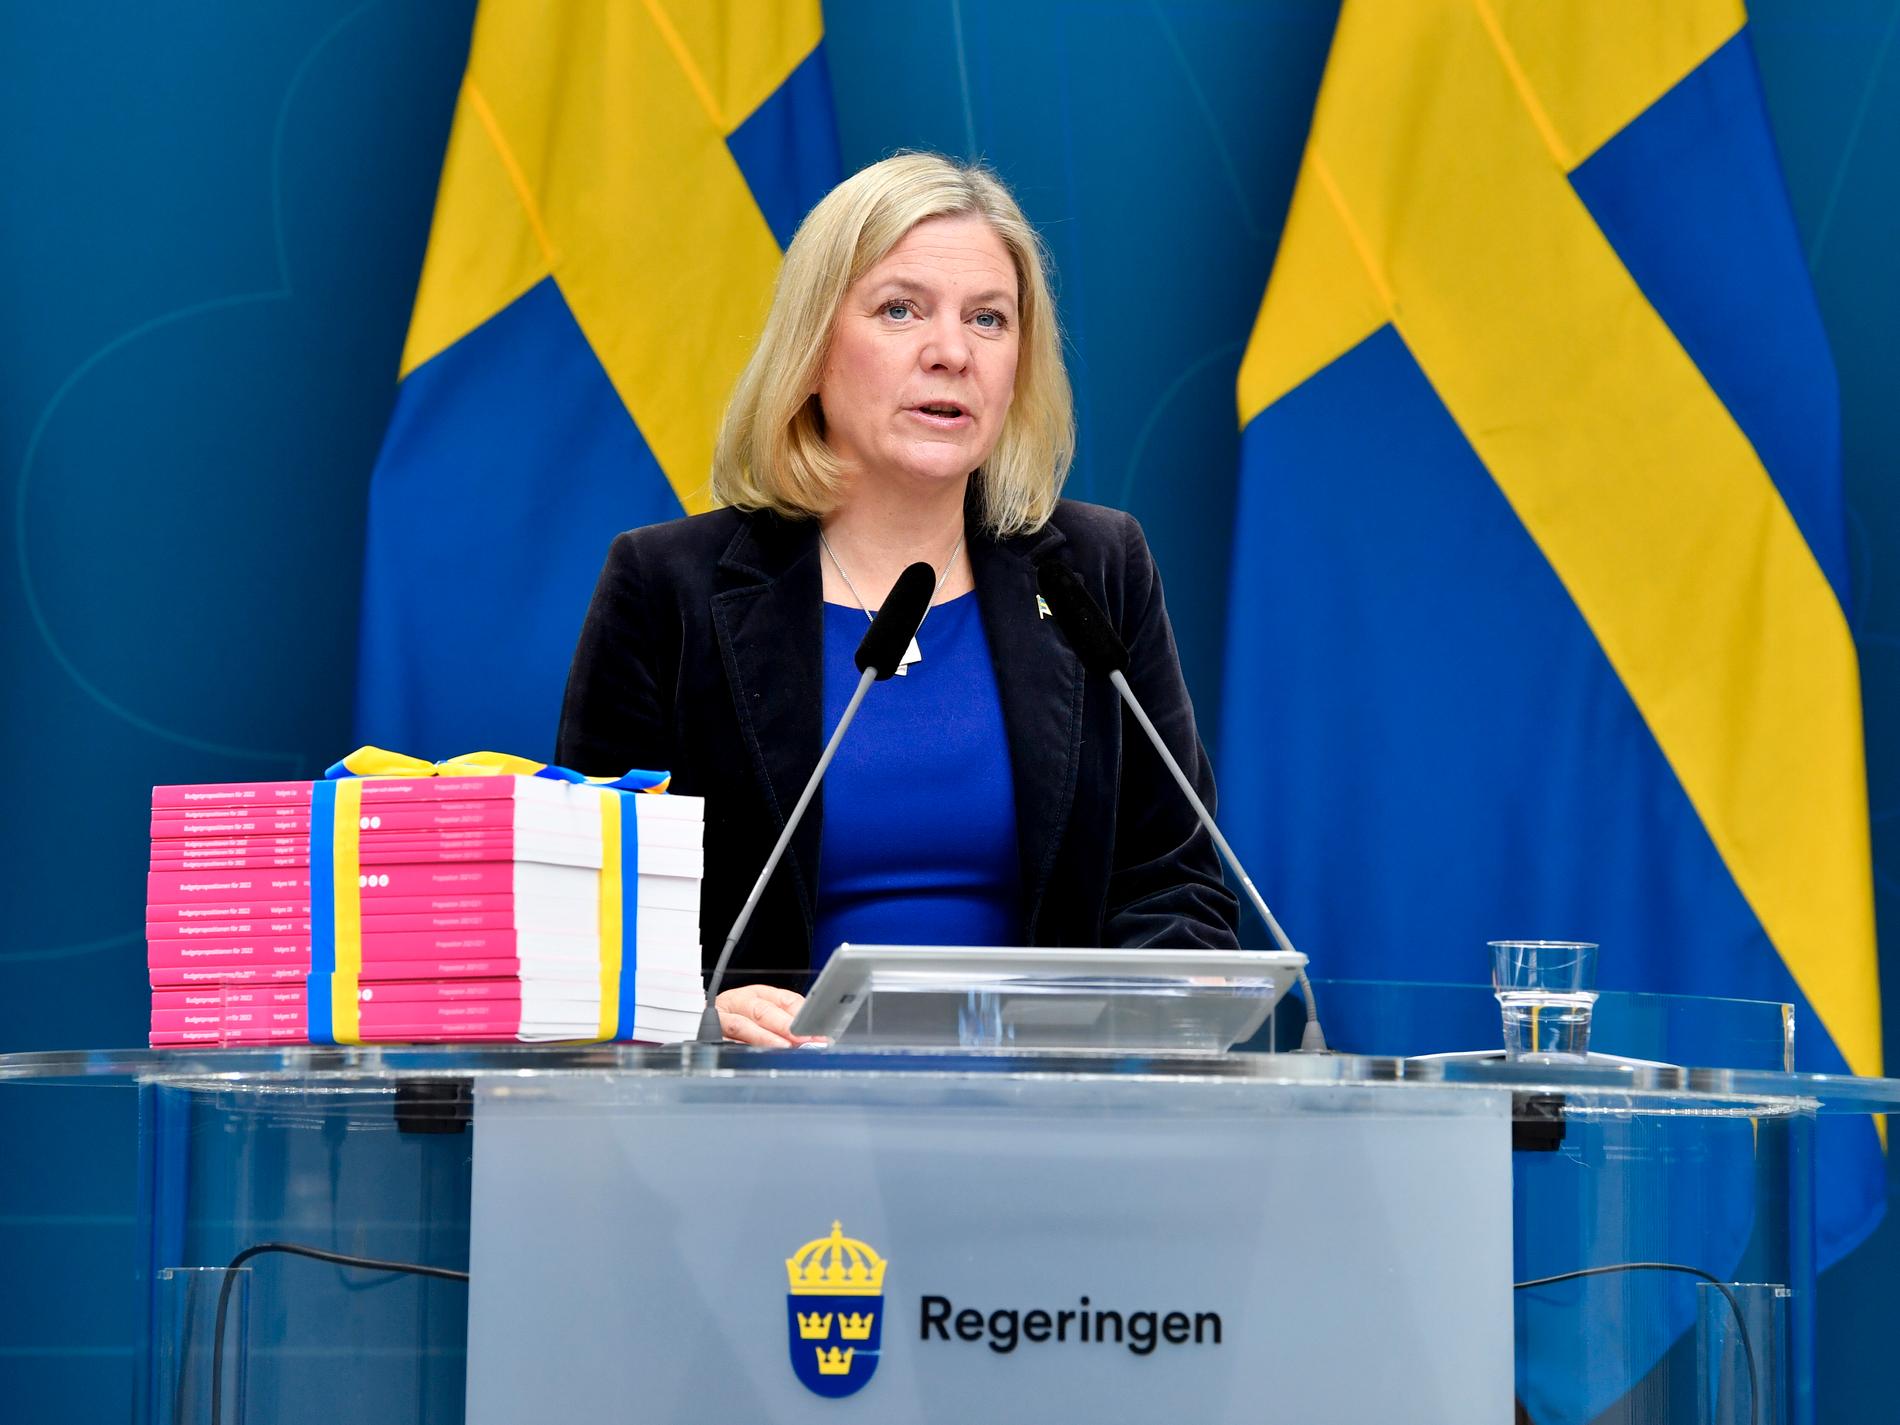 Enligt källor med insyn pekar allt på att det är Centerpartiet som blir Magdalena Anderssons regeringspartner om S vinner valet.